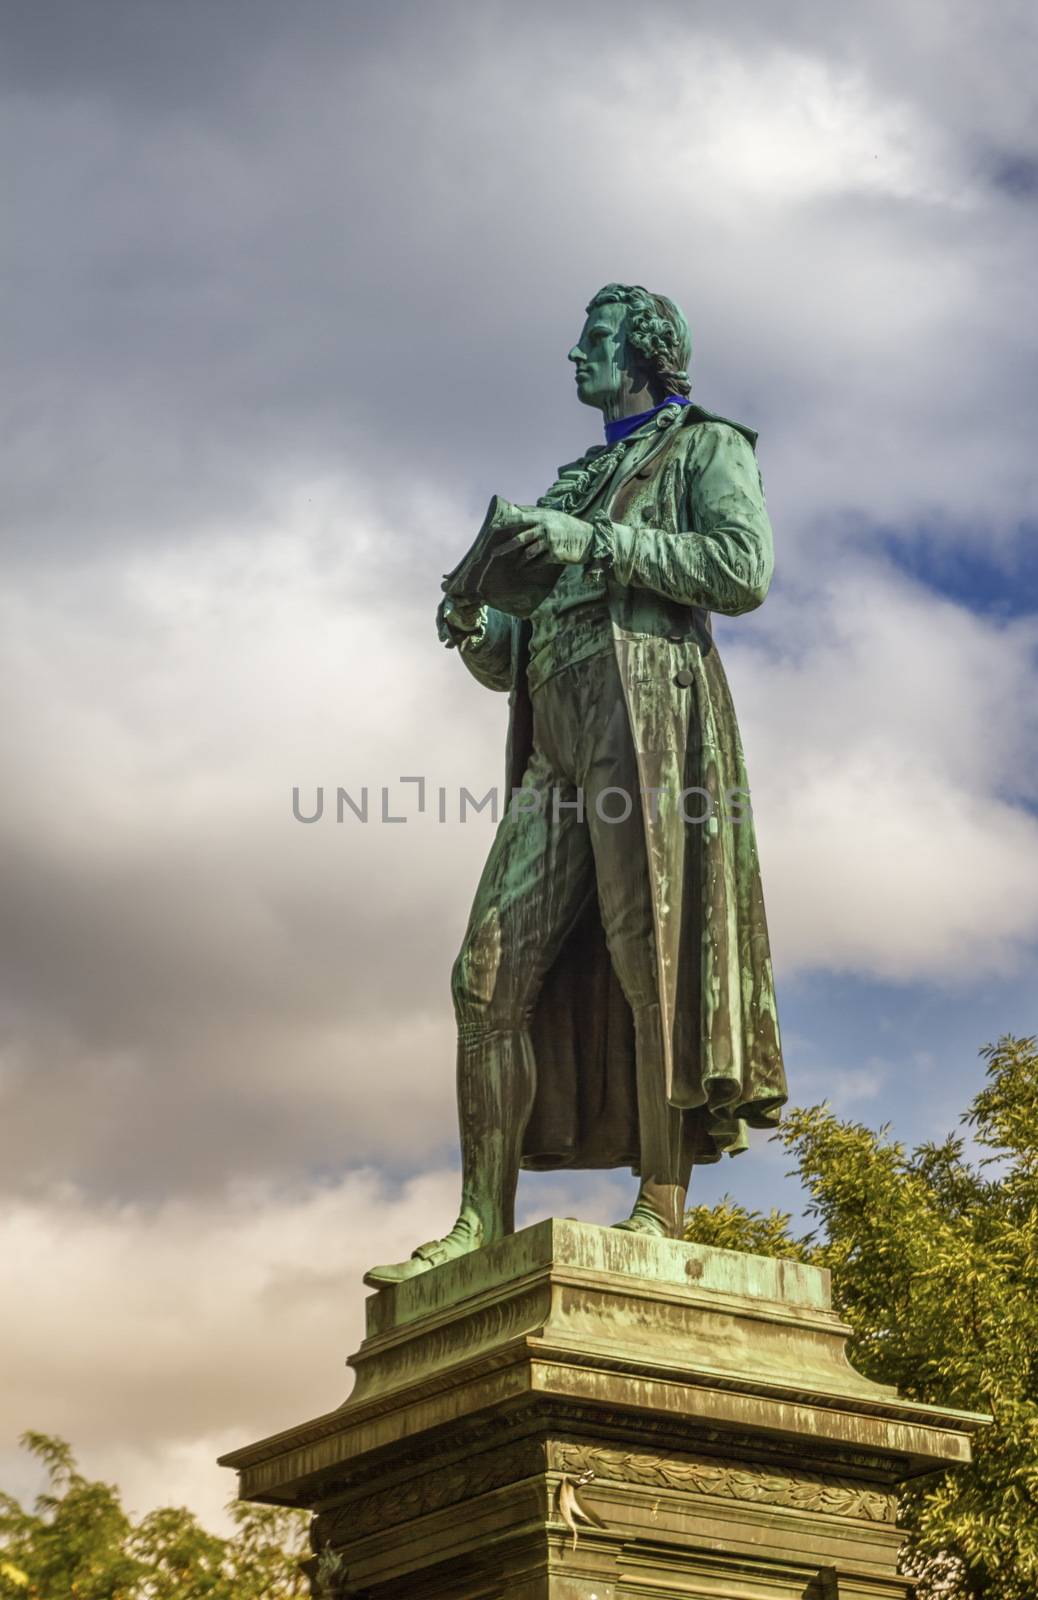 Friedrich Schiller statue, Vienna, Austria by Elenaphotos21